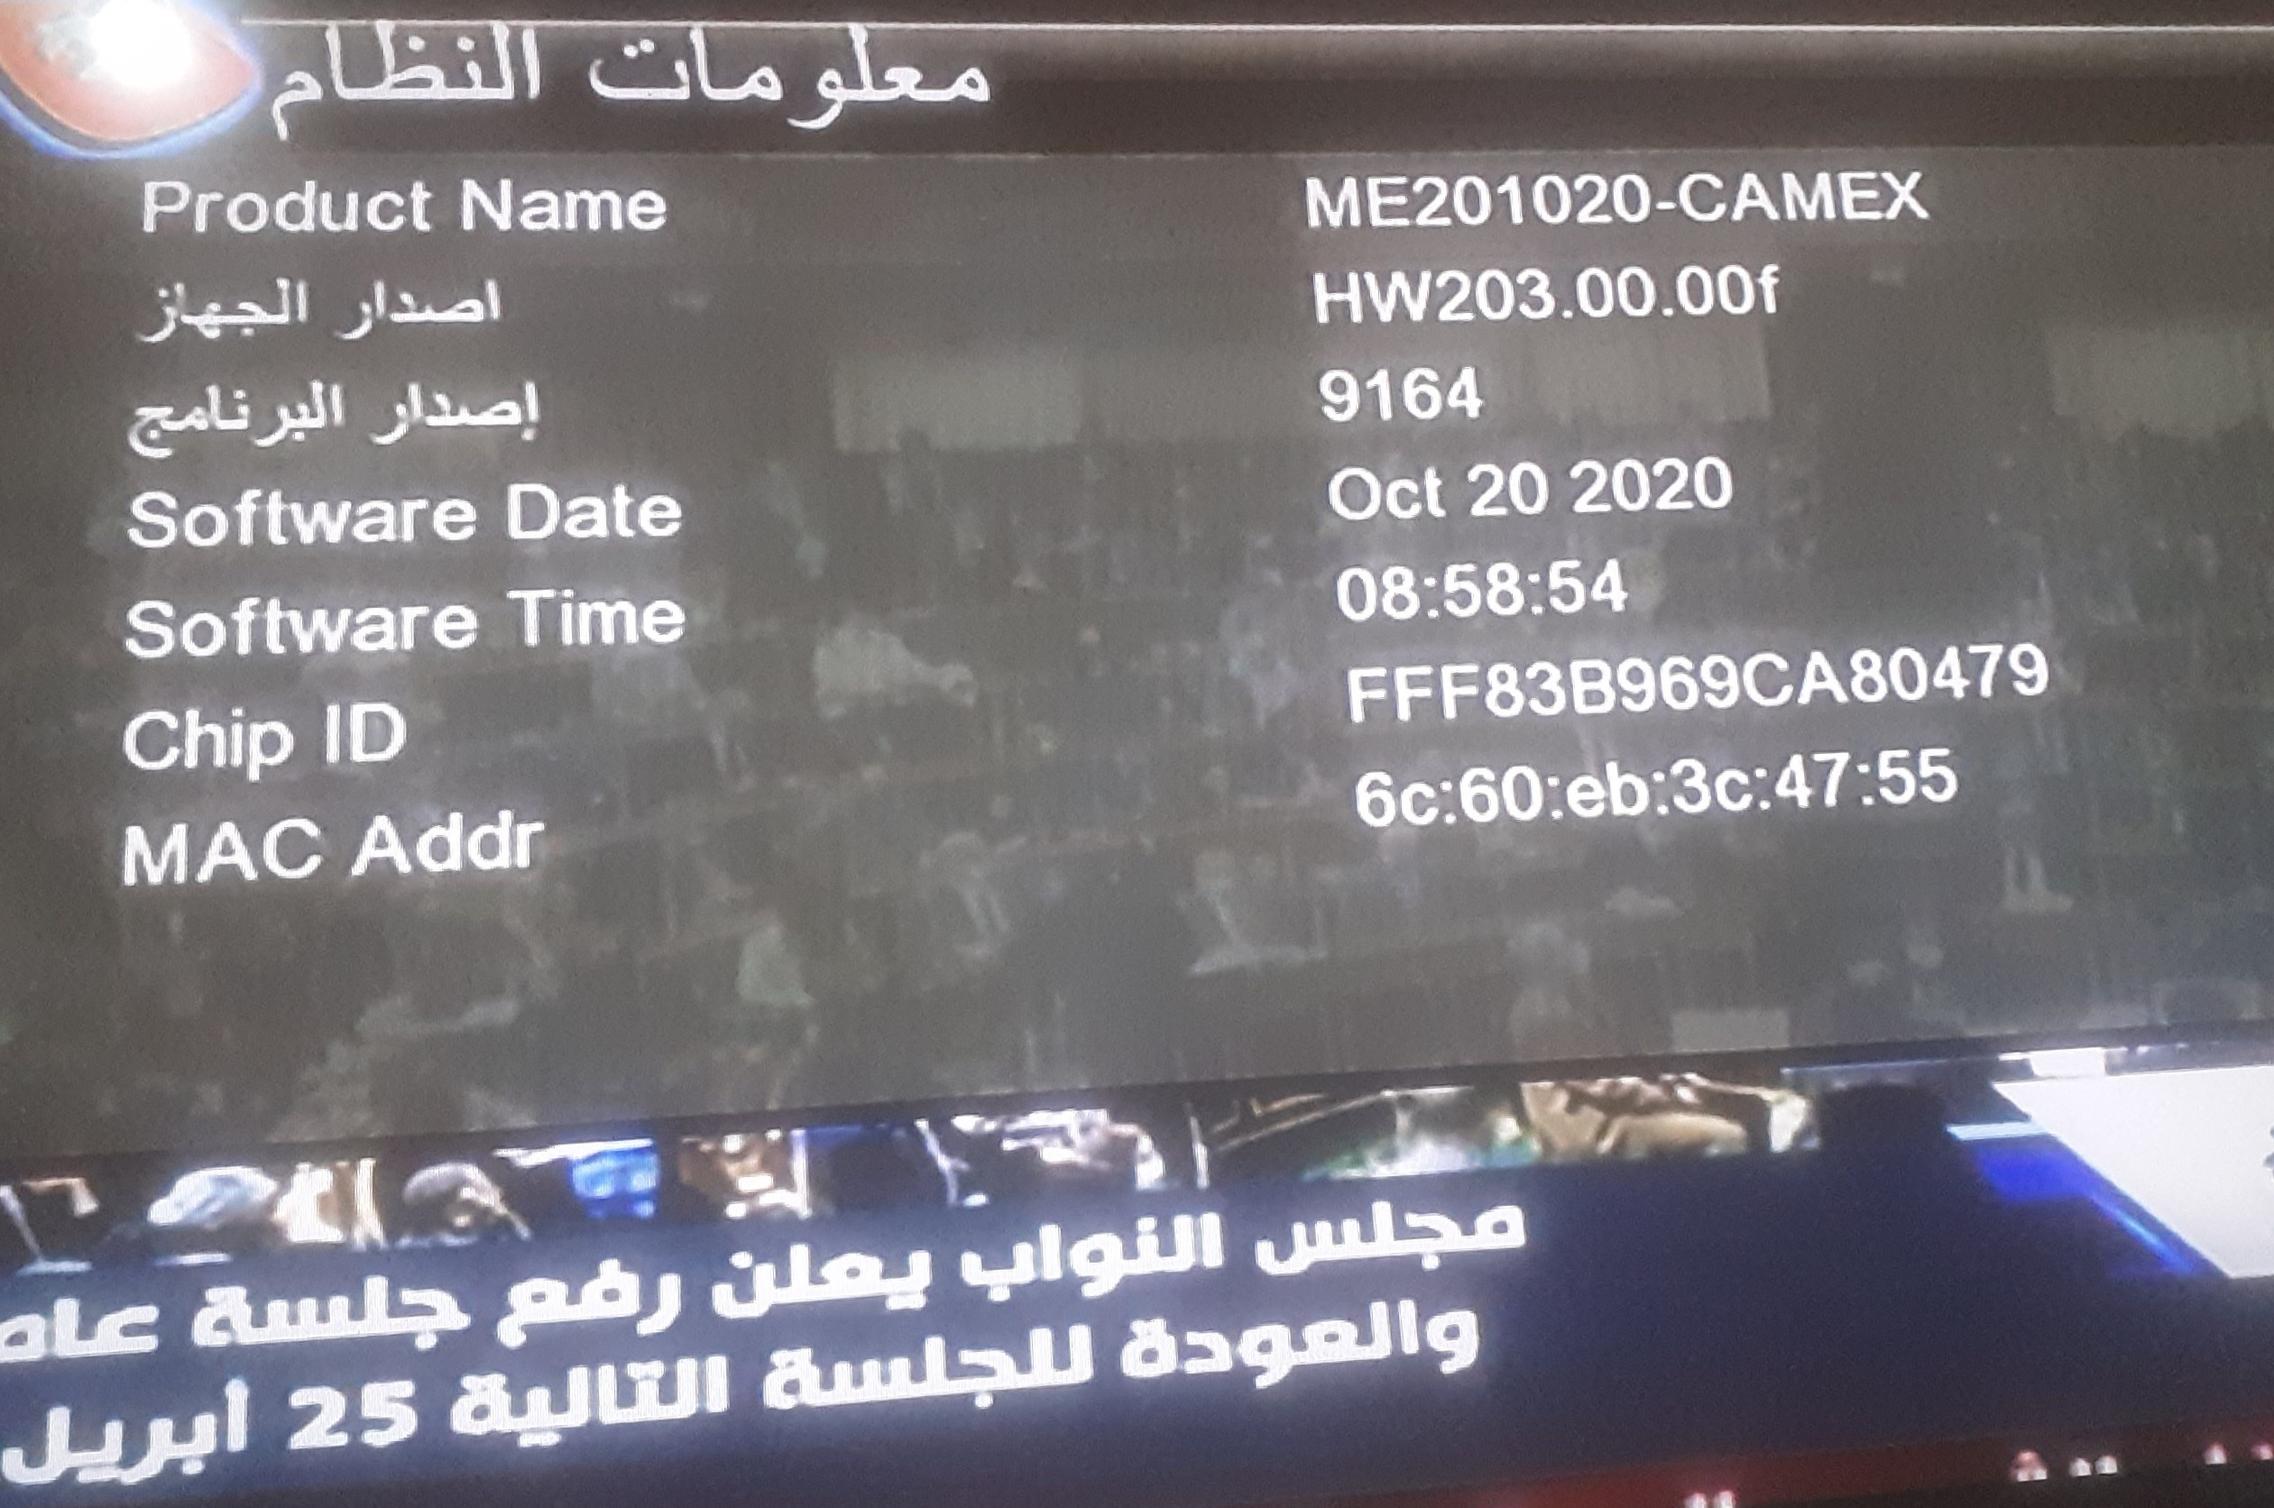 احدث ملف قنواتREDBOX RX-9000 HD MINI و royal 999 الاحمر المزود بـ 2 شاشة رقمية و CAMEX الاسود لشهر10 P_24840jjjg2